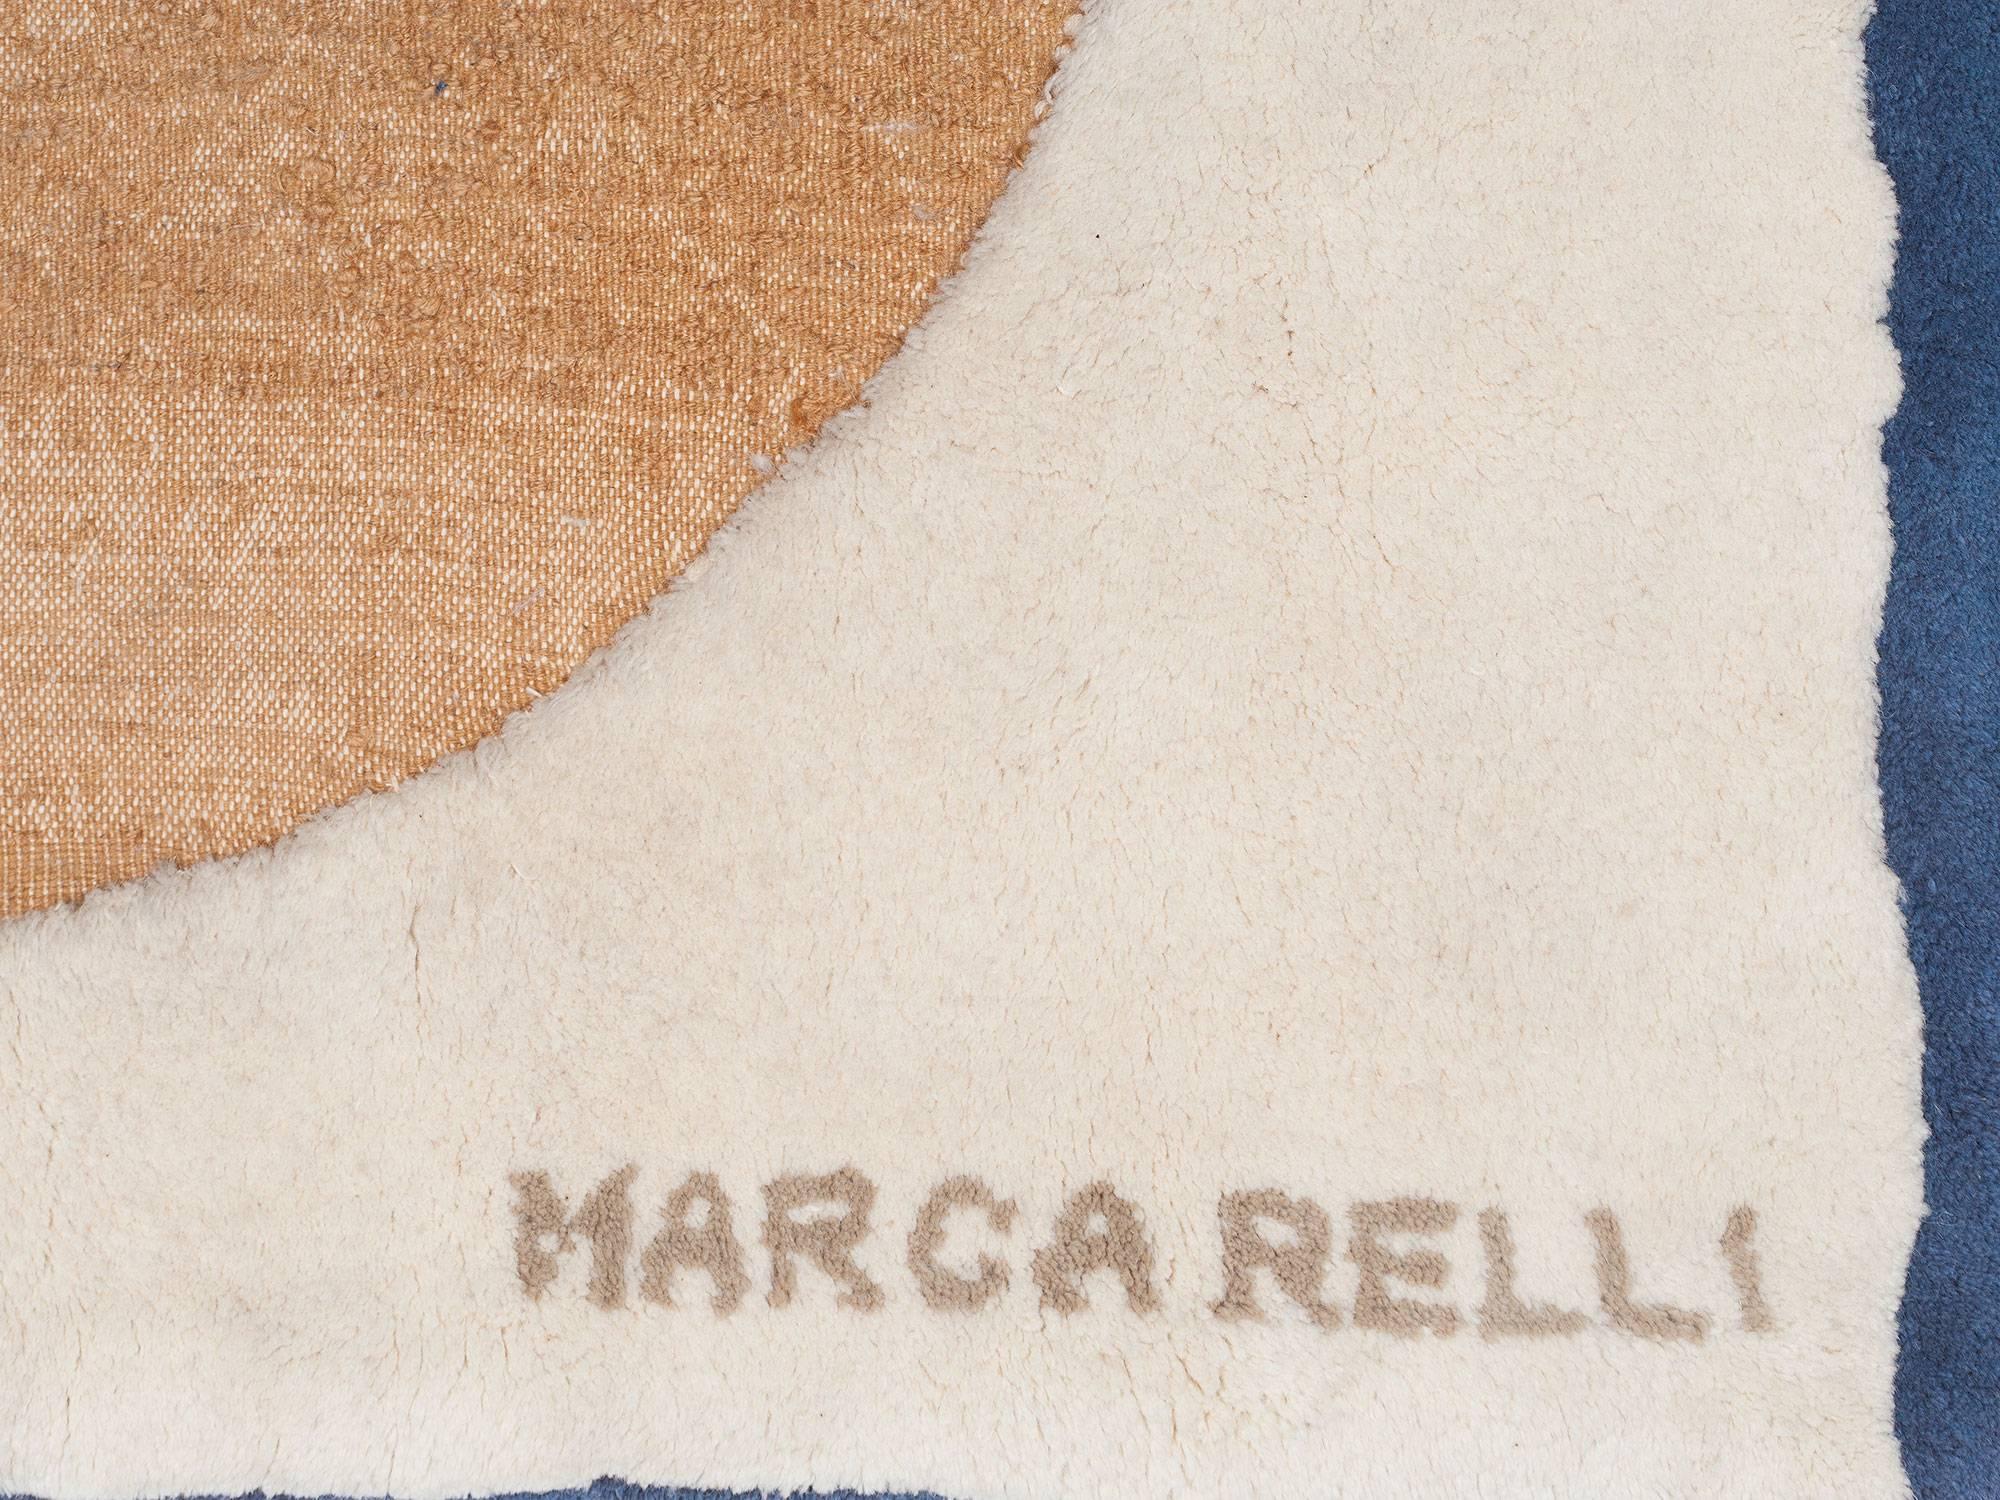 American Conrad Marca-Relli Tapestry